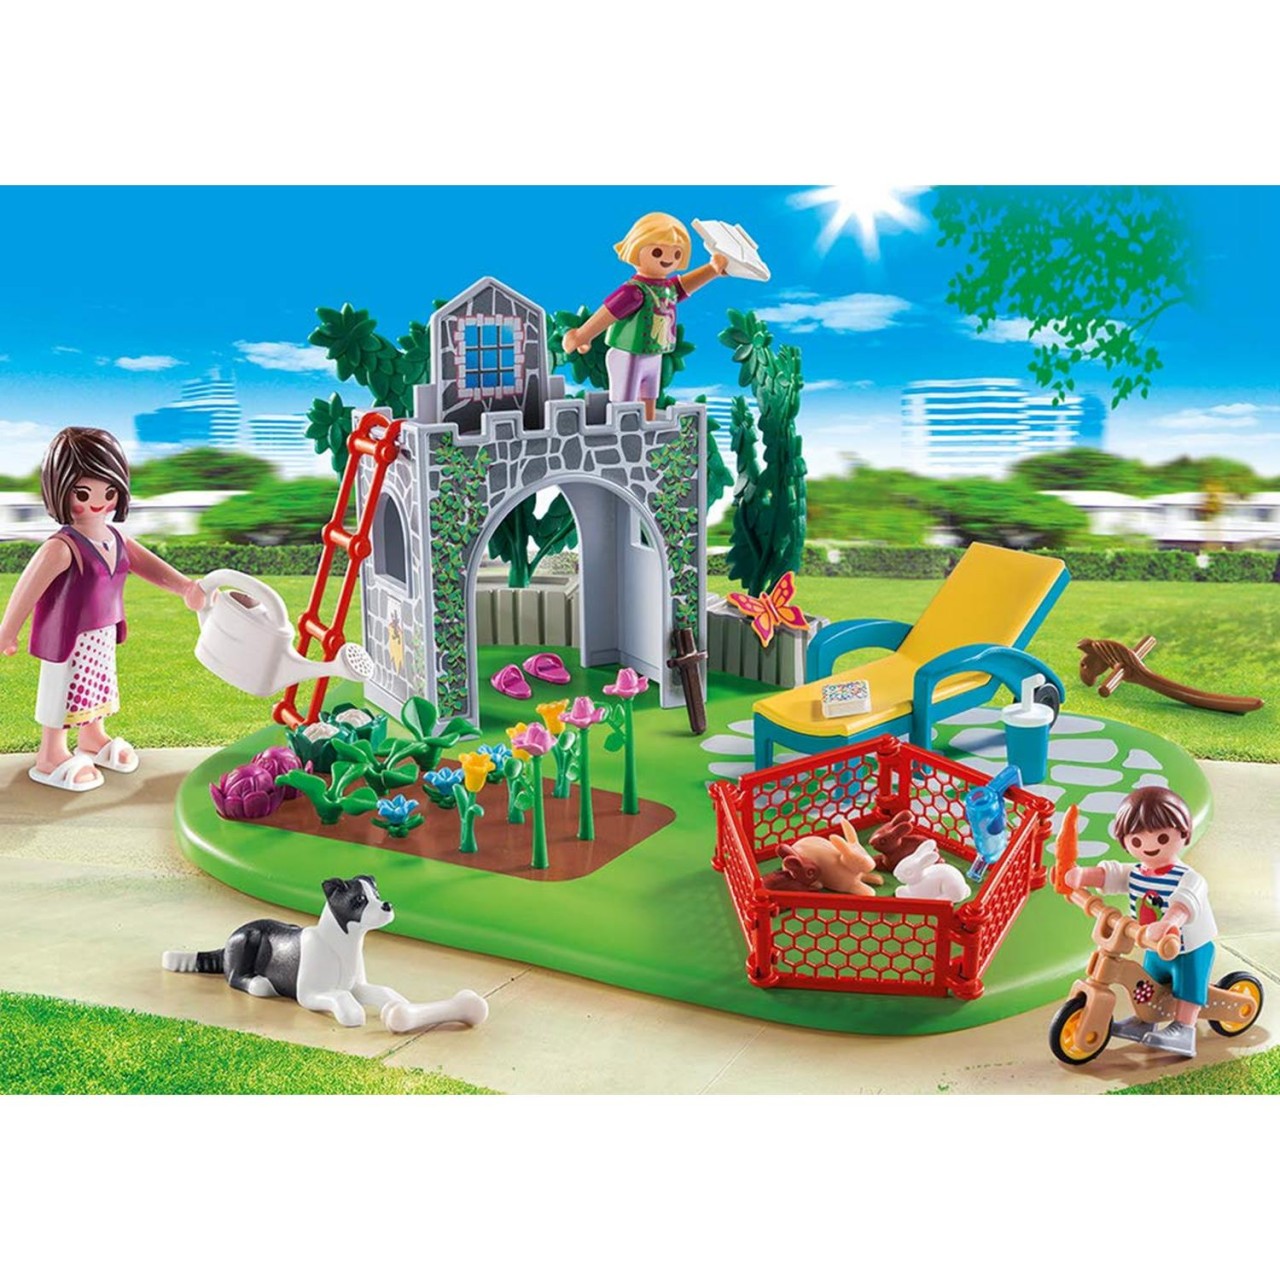 Playmobil 70010 SuperSet Familiengarten